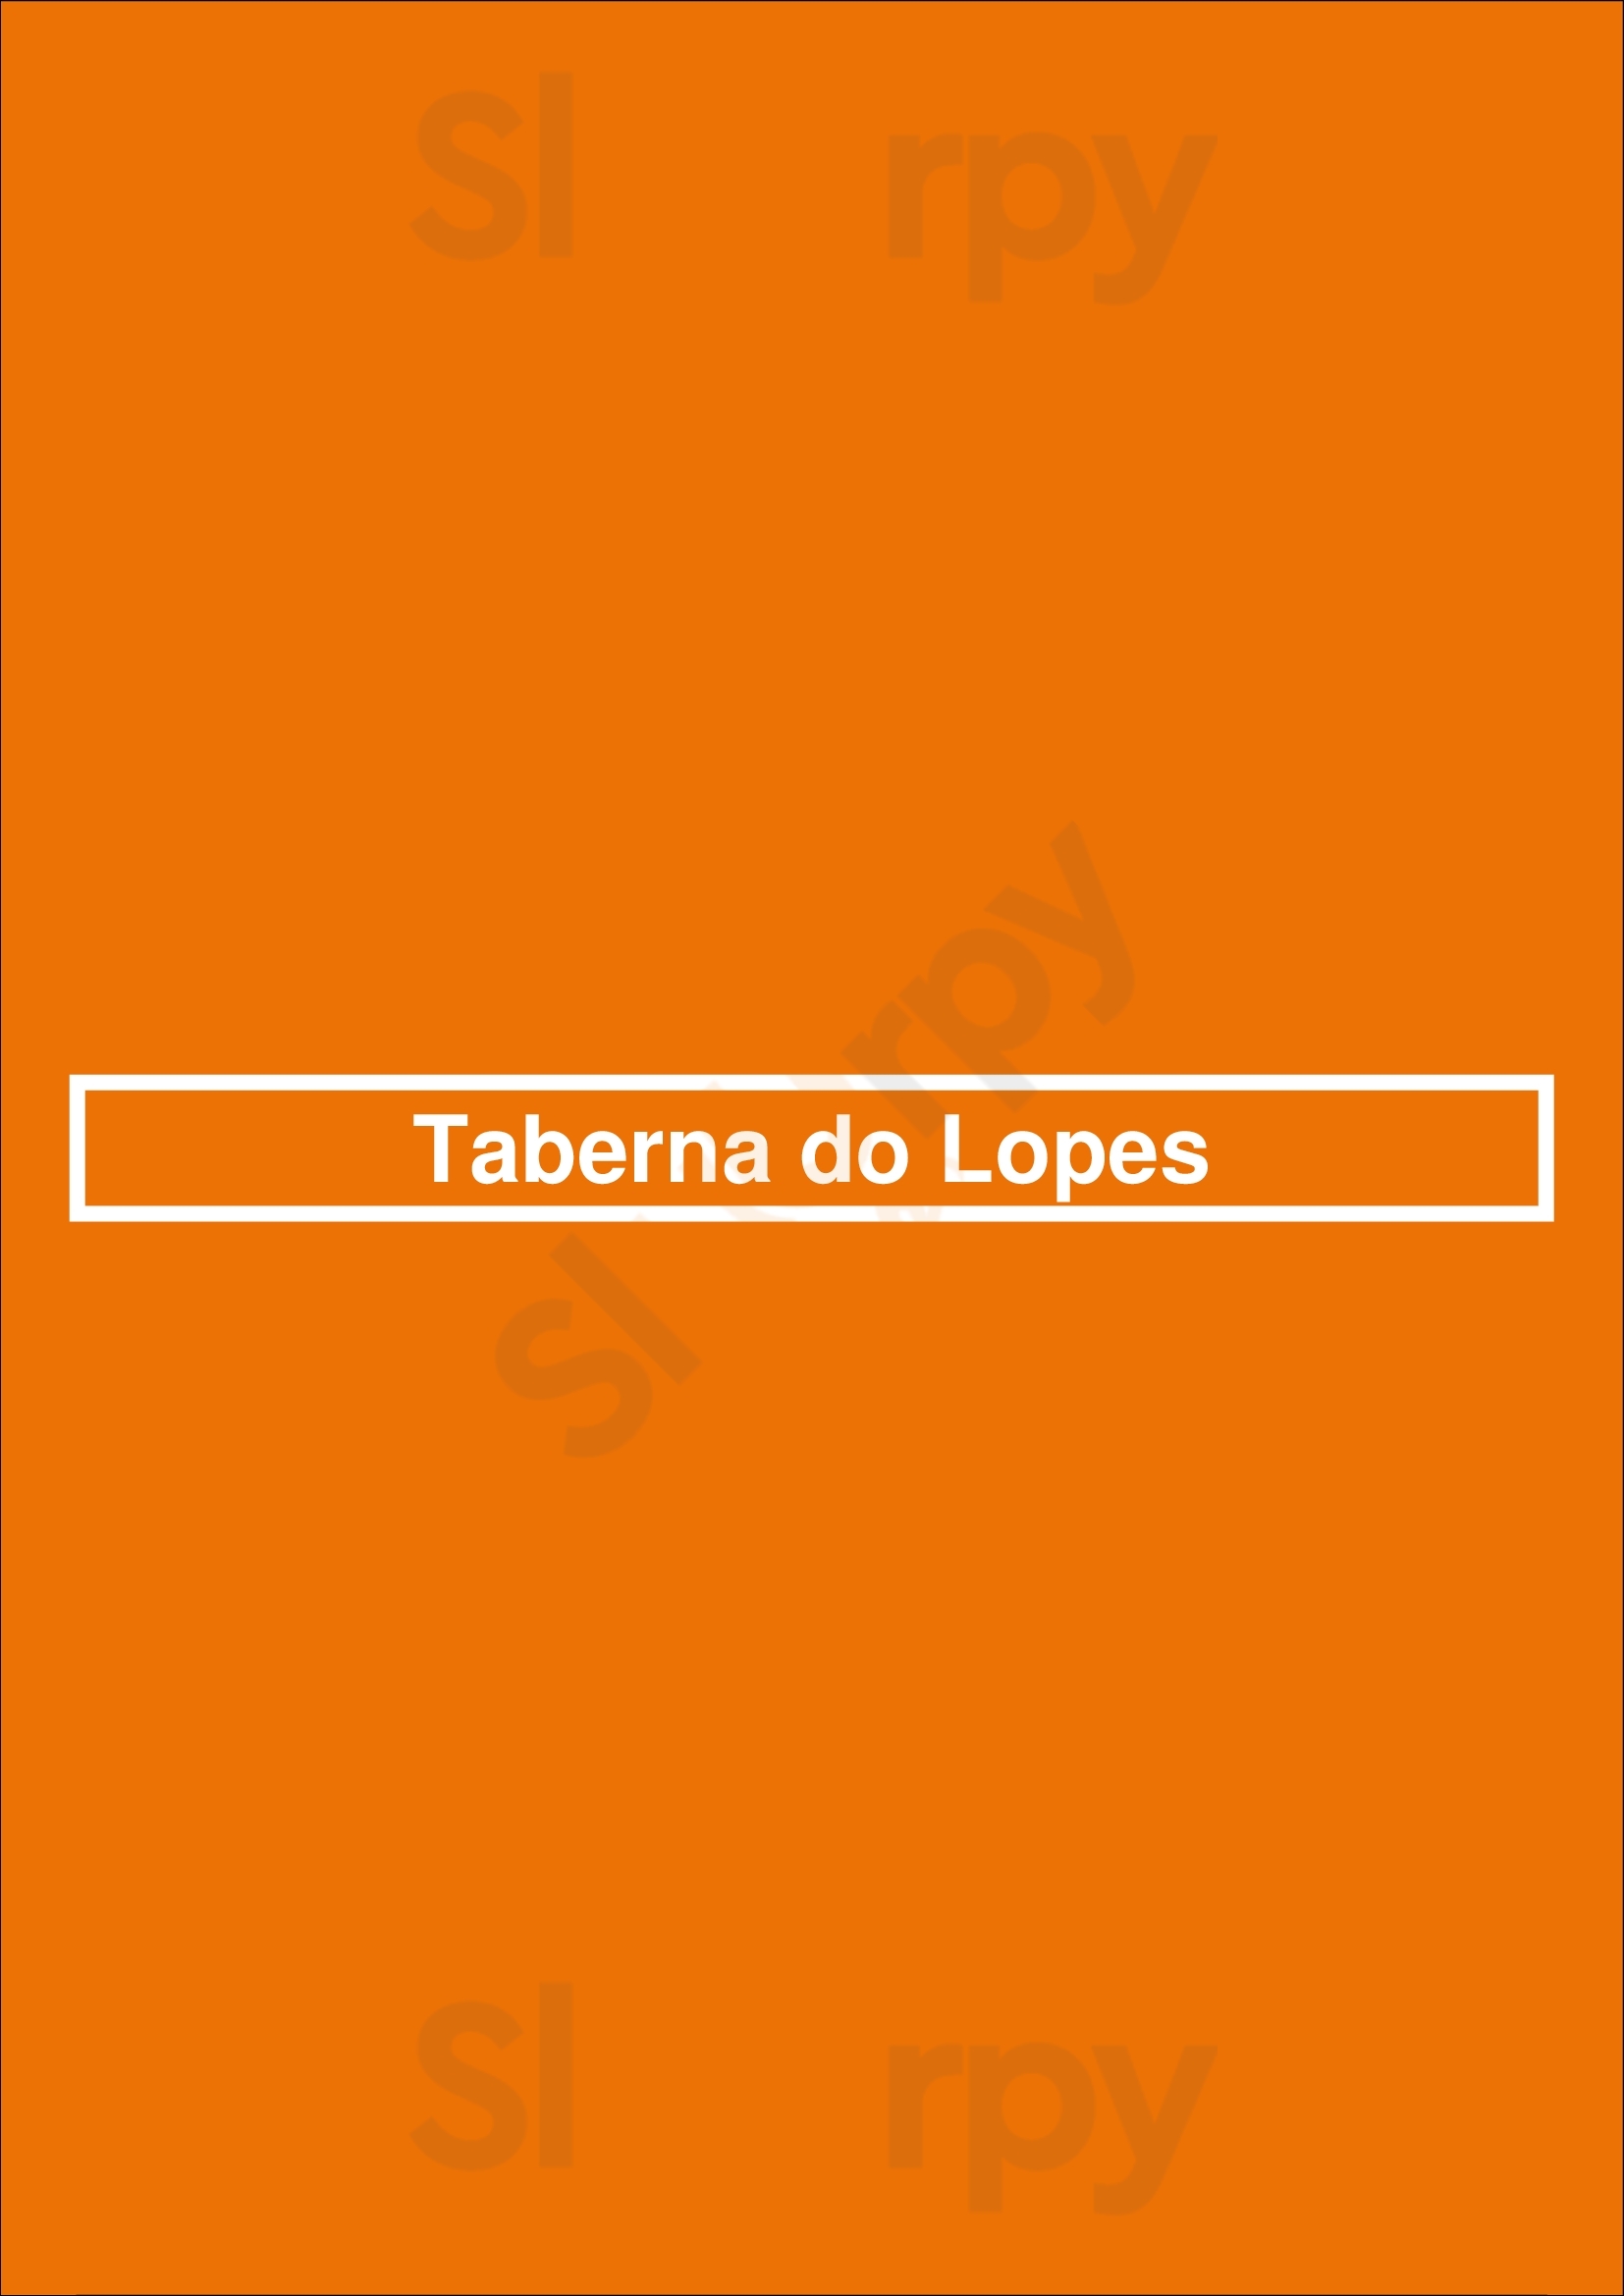 Taberna Do Lopes Guimarães Menu - 1